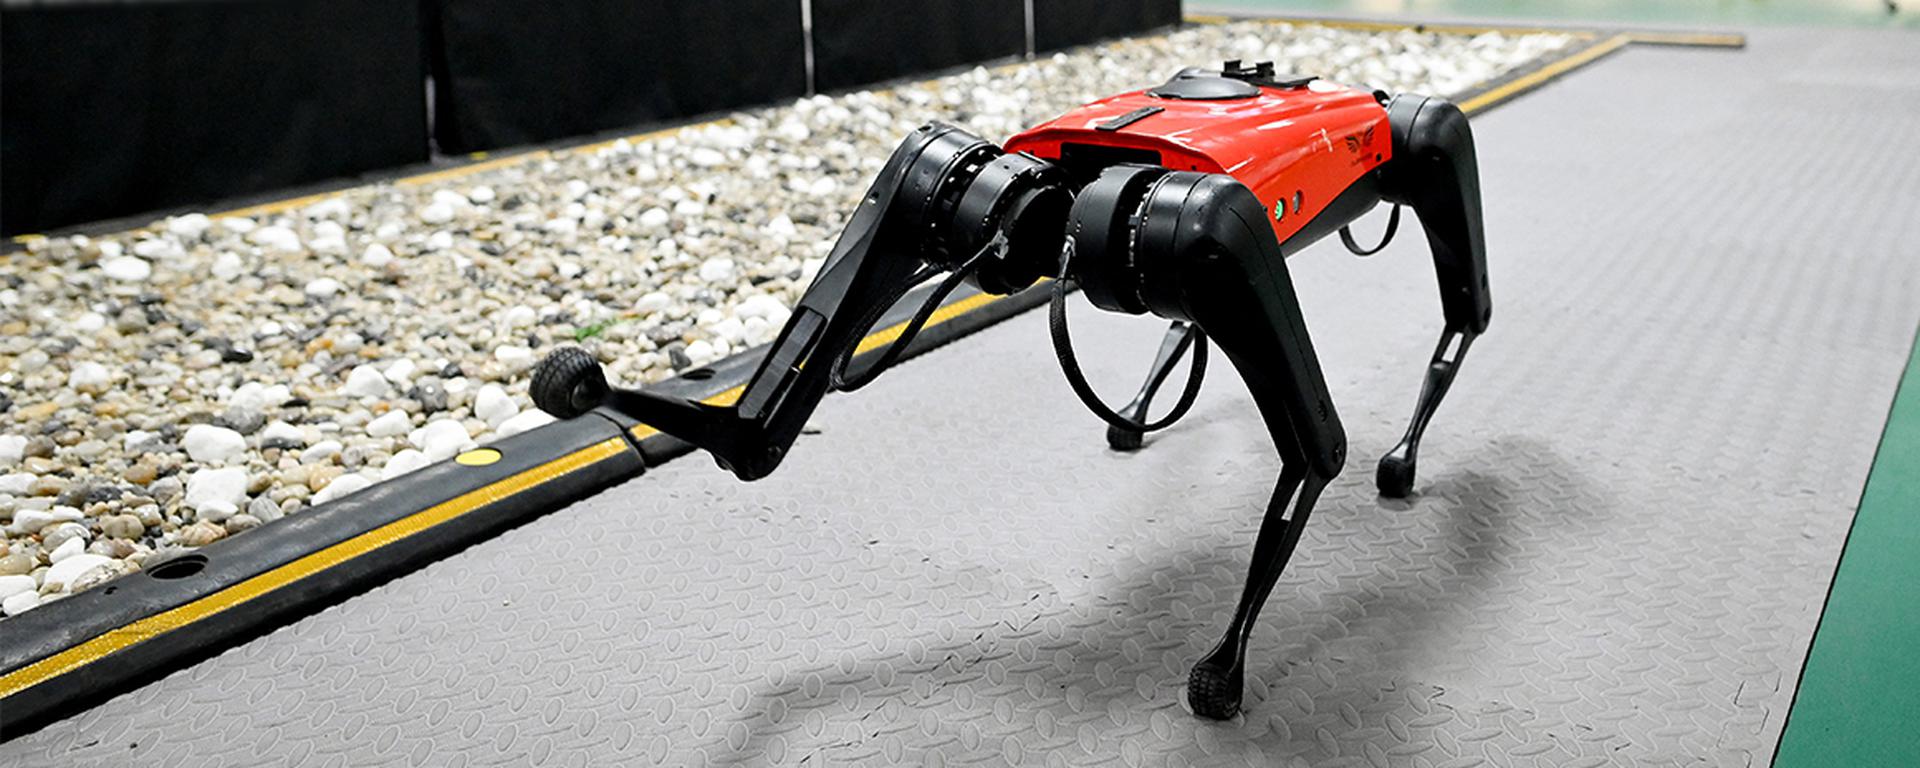 Perro robot con apariencia futurística